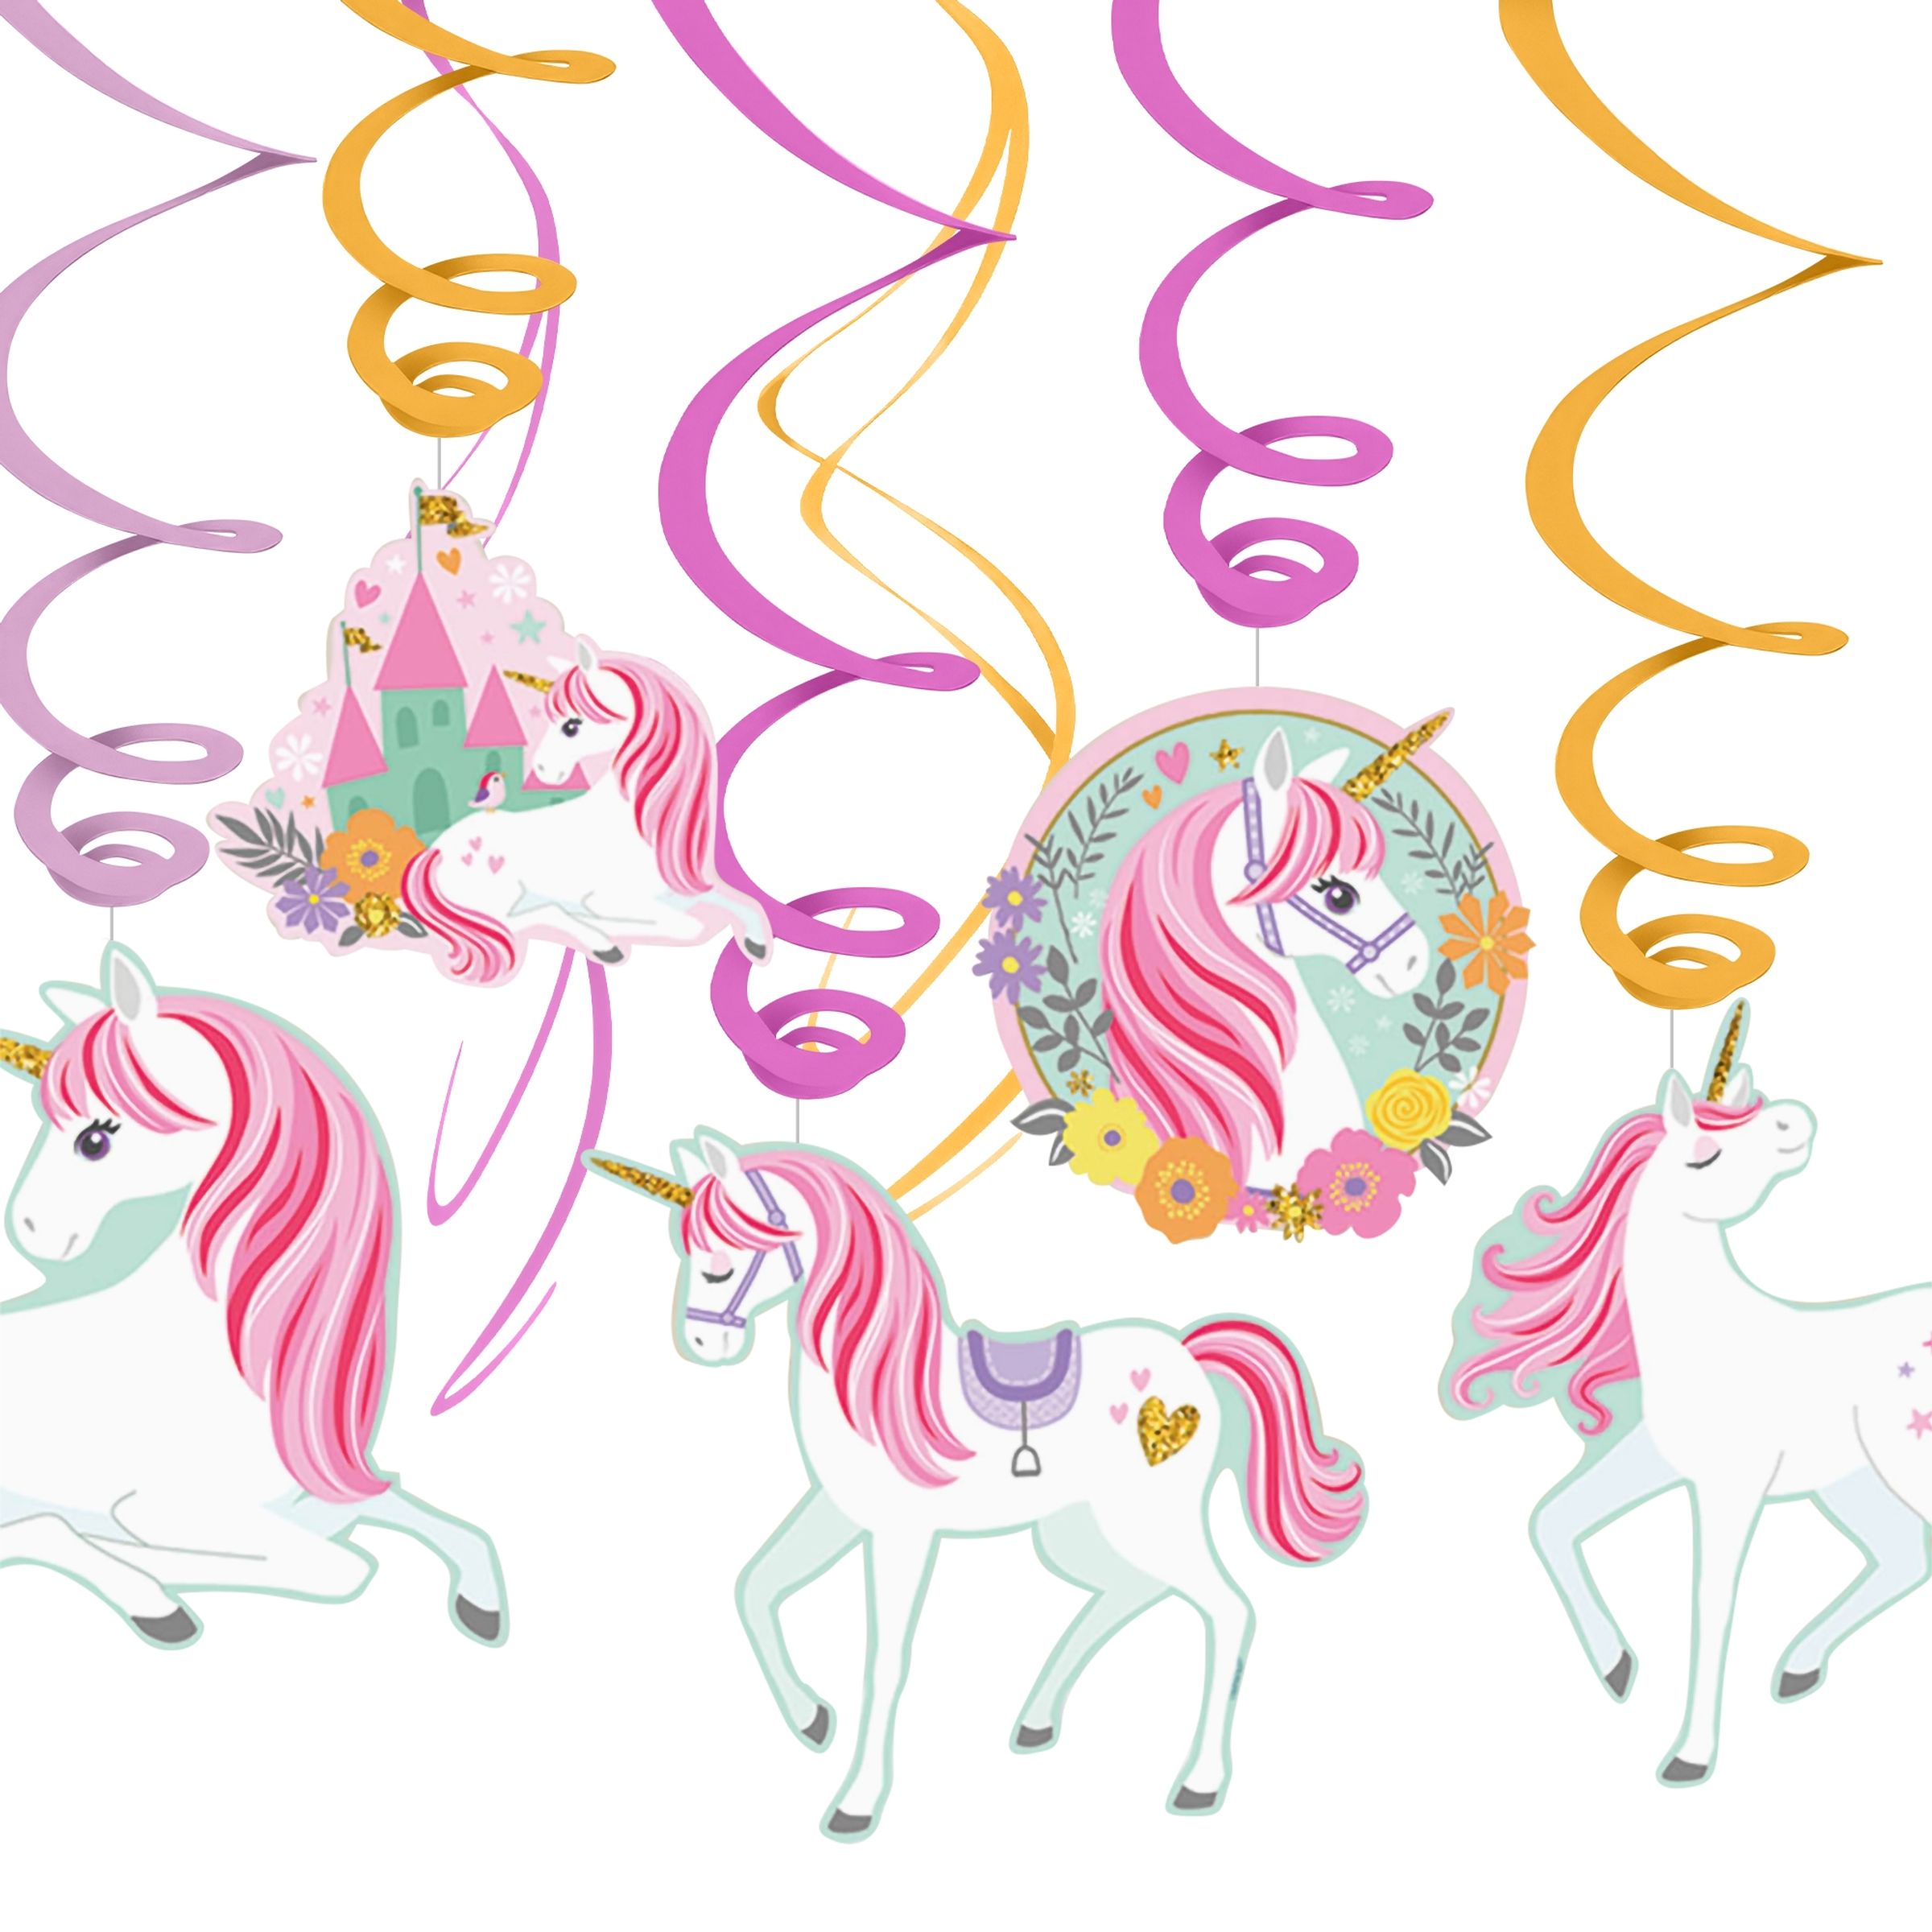 Swirls Unicorn Party Hängande Dekoration - 12-pack